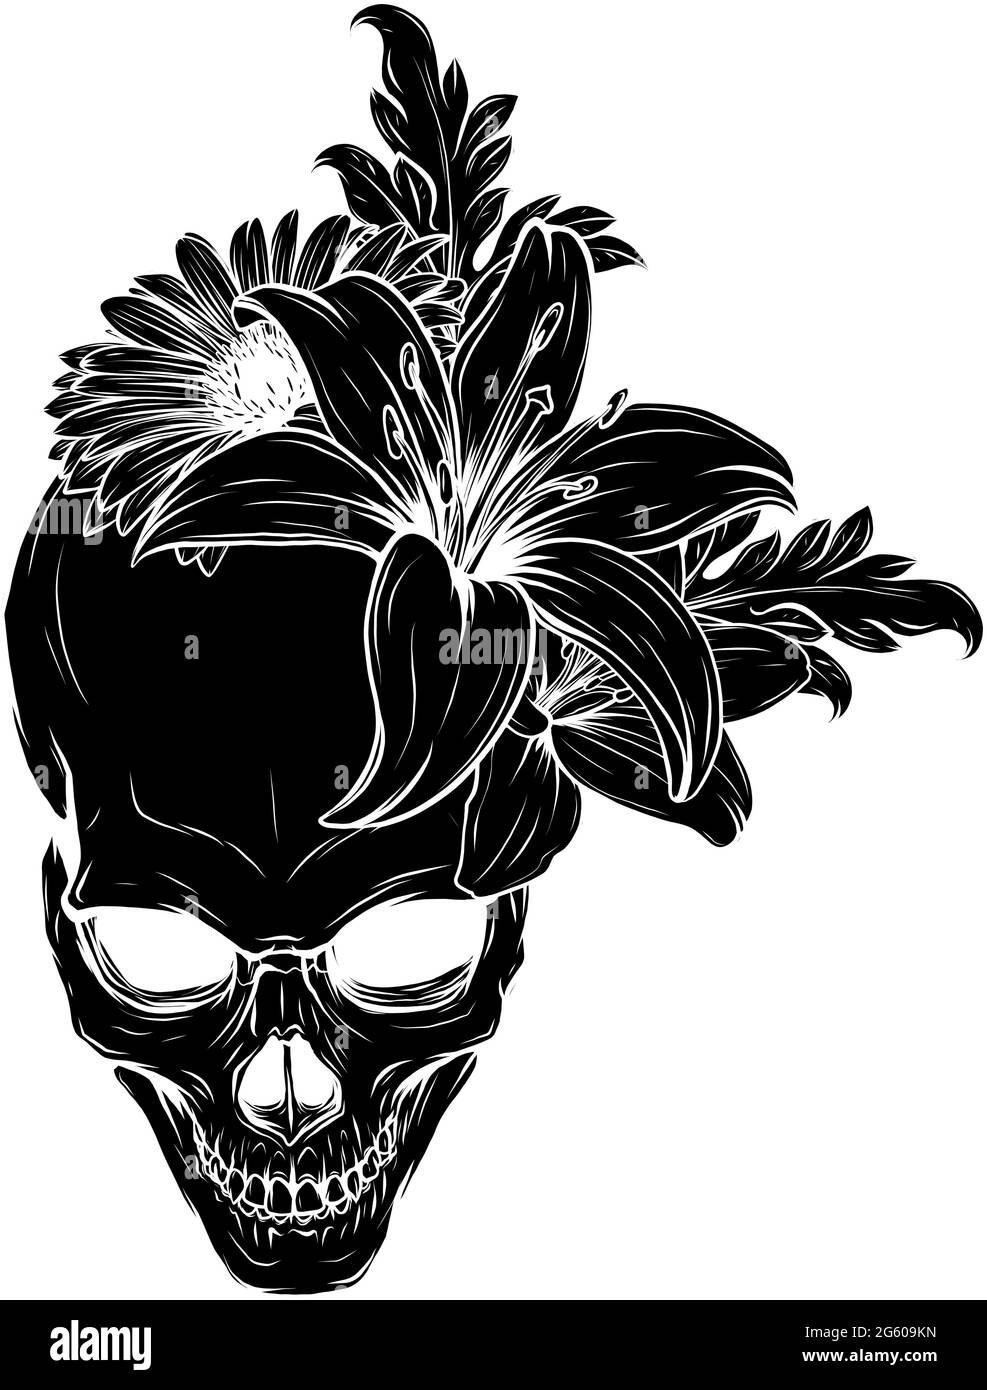 Disegno dell'illustrazione vettoriale del cranio umano e dei fiori Illustrazione Vettoriale